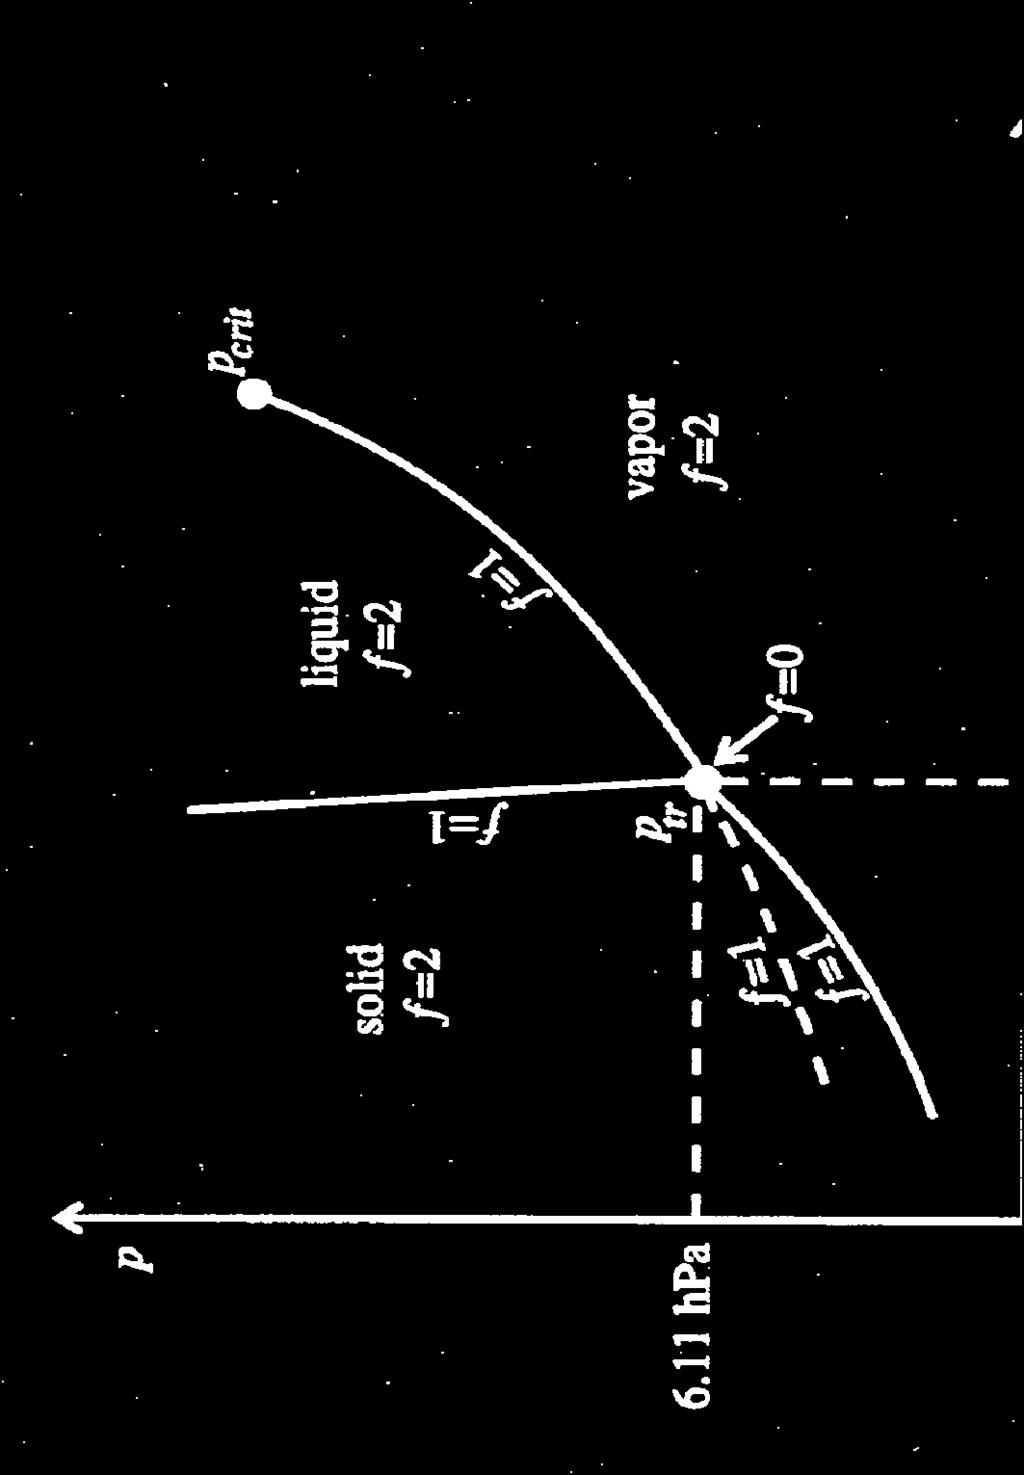 Fusion curve Vapor pressure curve of liquid water P crit = 8.